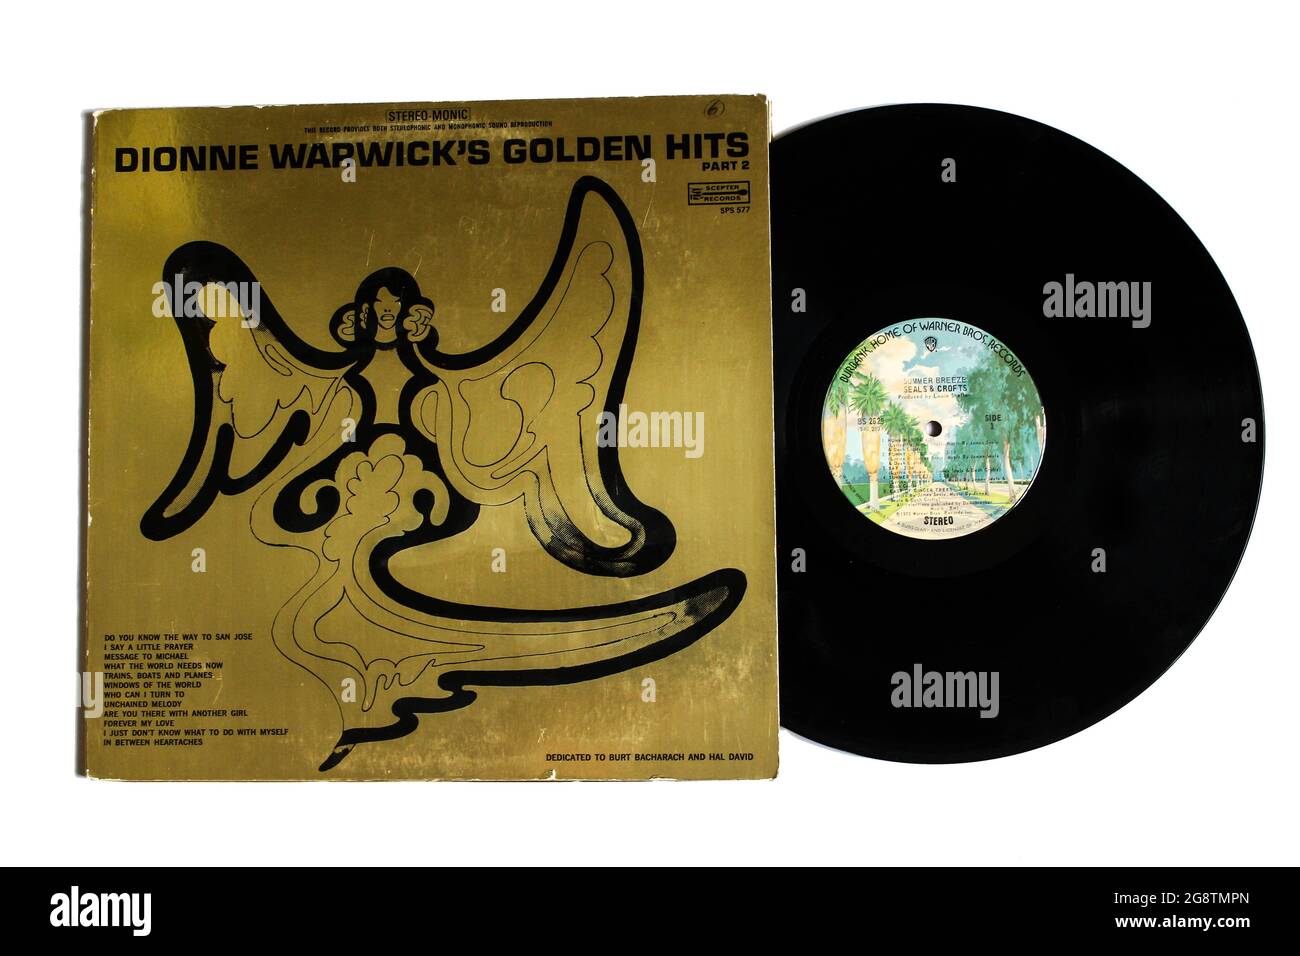 Funk- und Soul-Künstlerin, Dionne Warwick Musikalbum auf Vinyl-LP-Schallplatte. Titel: Dionne Warwick's Golden Hits Teil 2 Albumcover Stockfoto